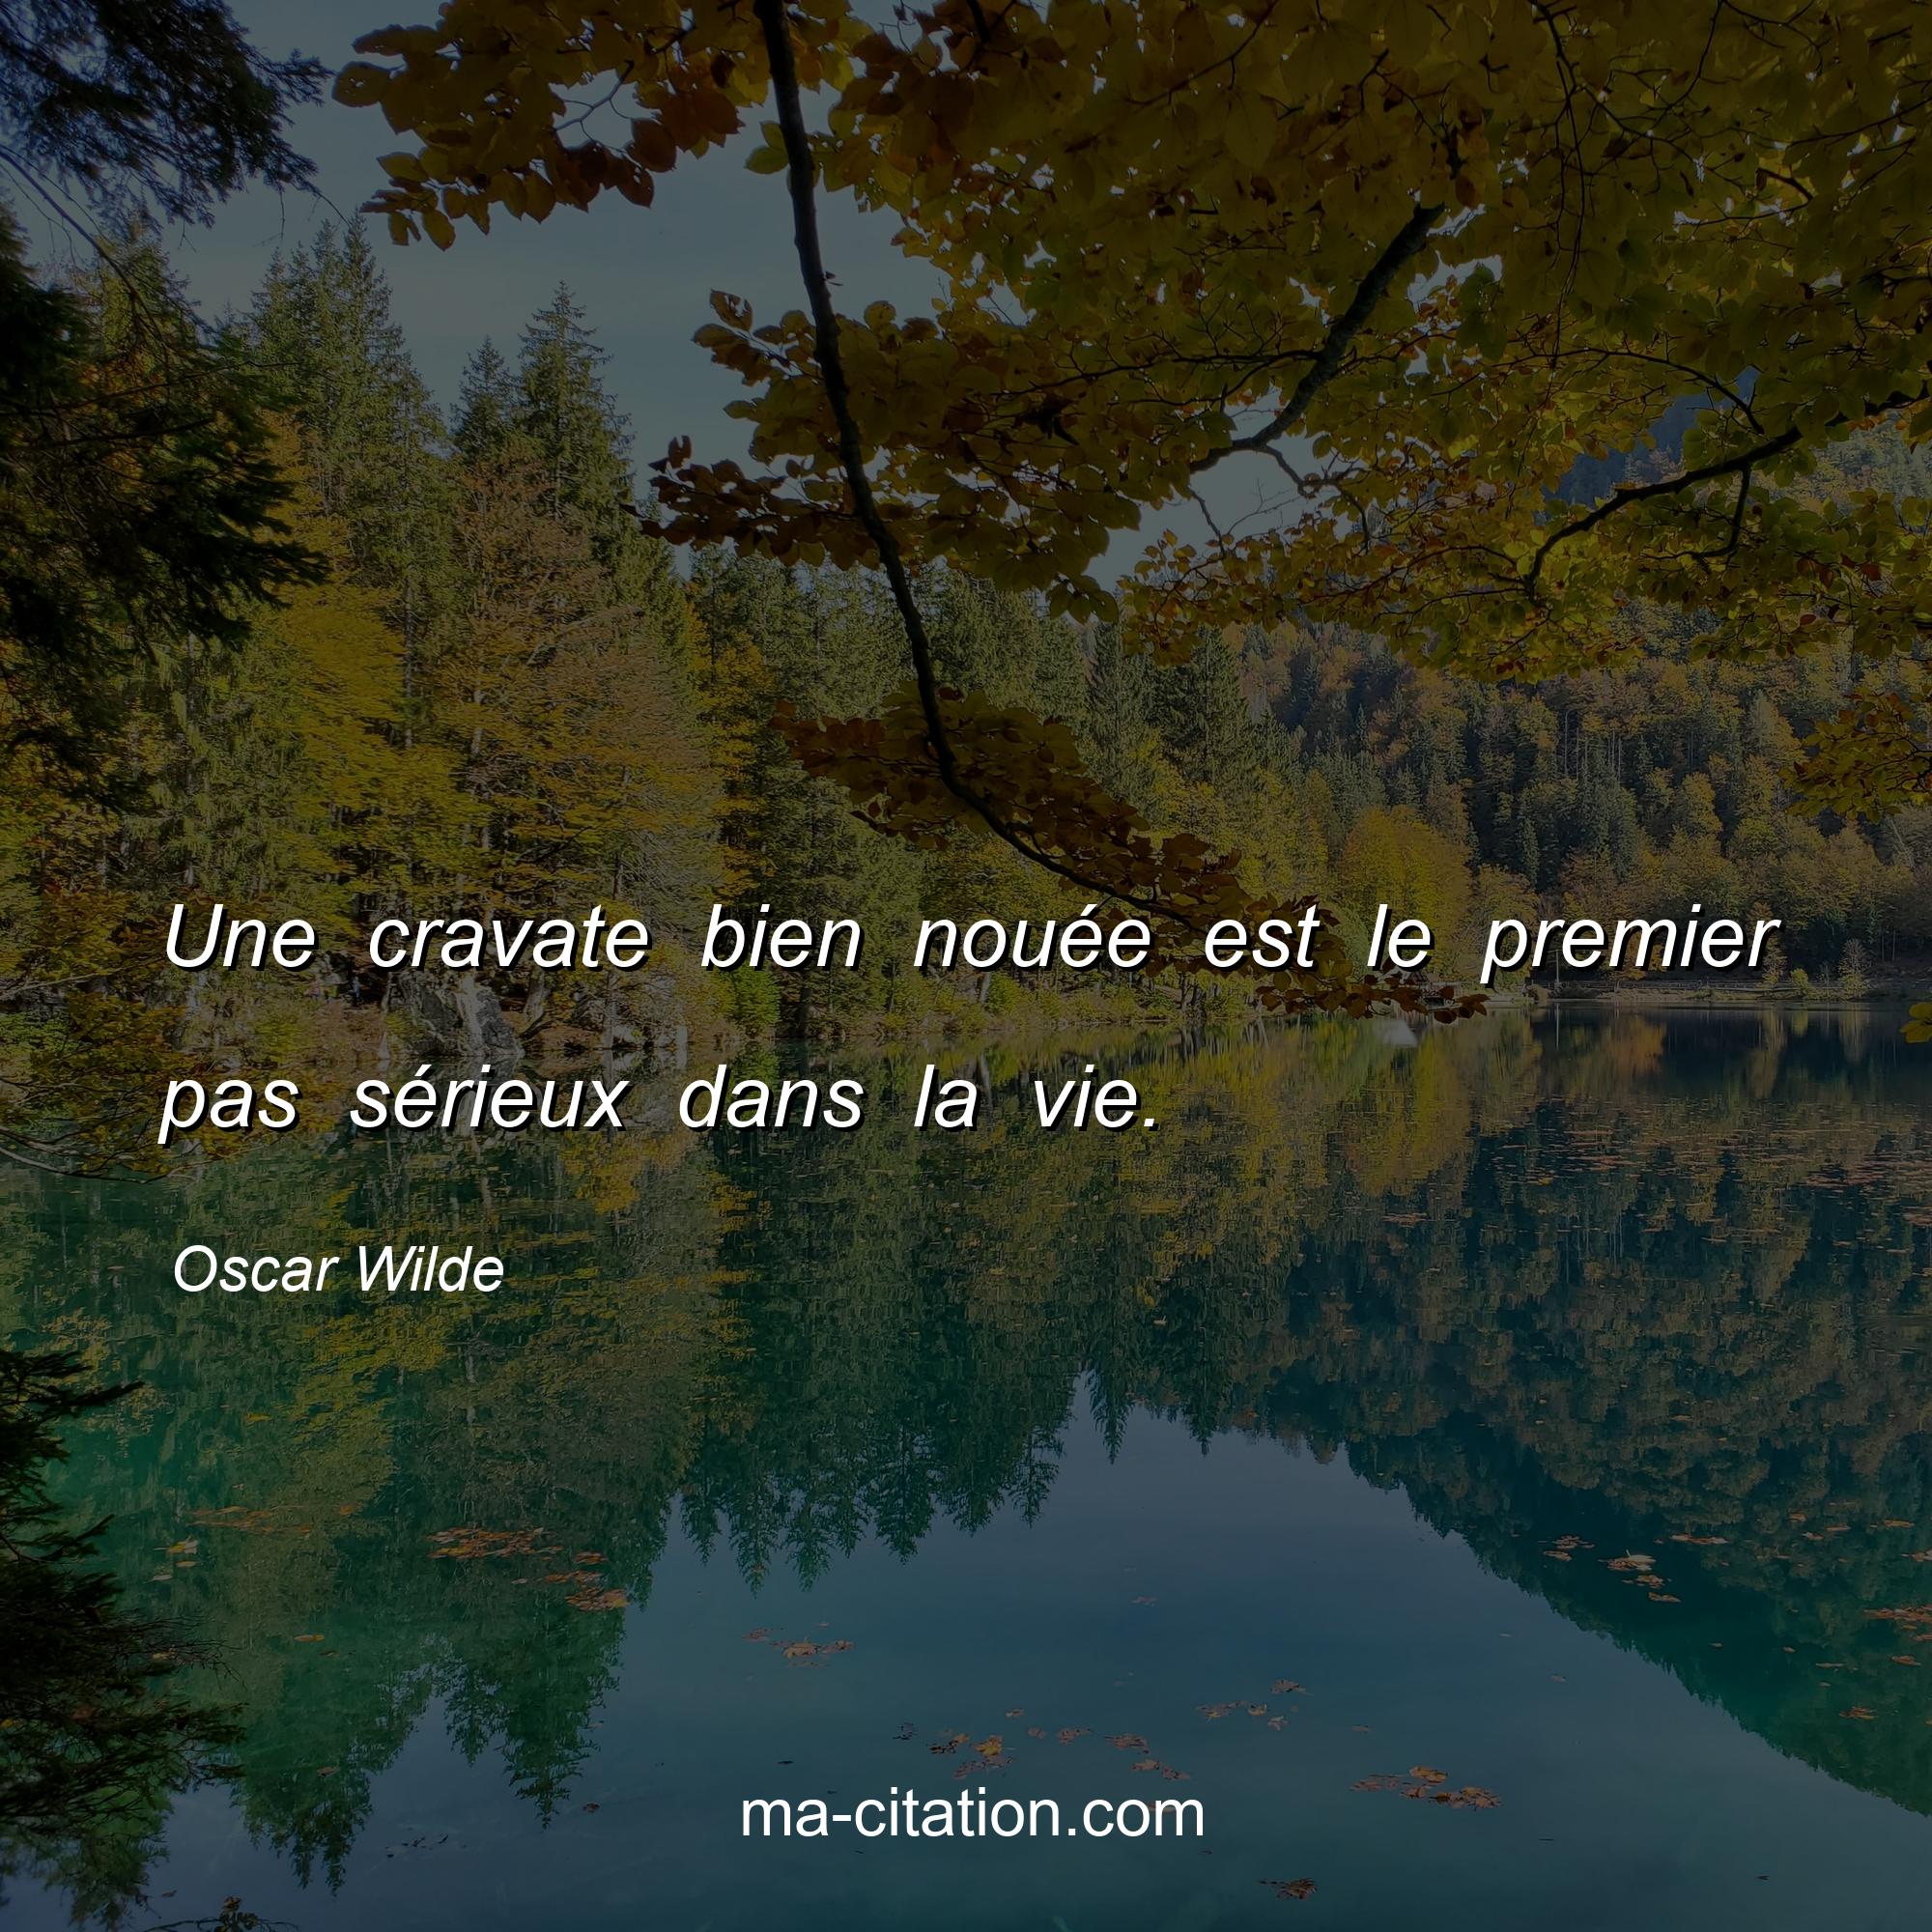 Oscar Wilde : Une cravate bien nouée est le premier pas sérieux dans la vie.